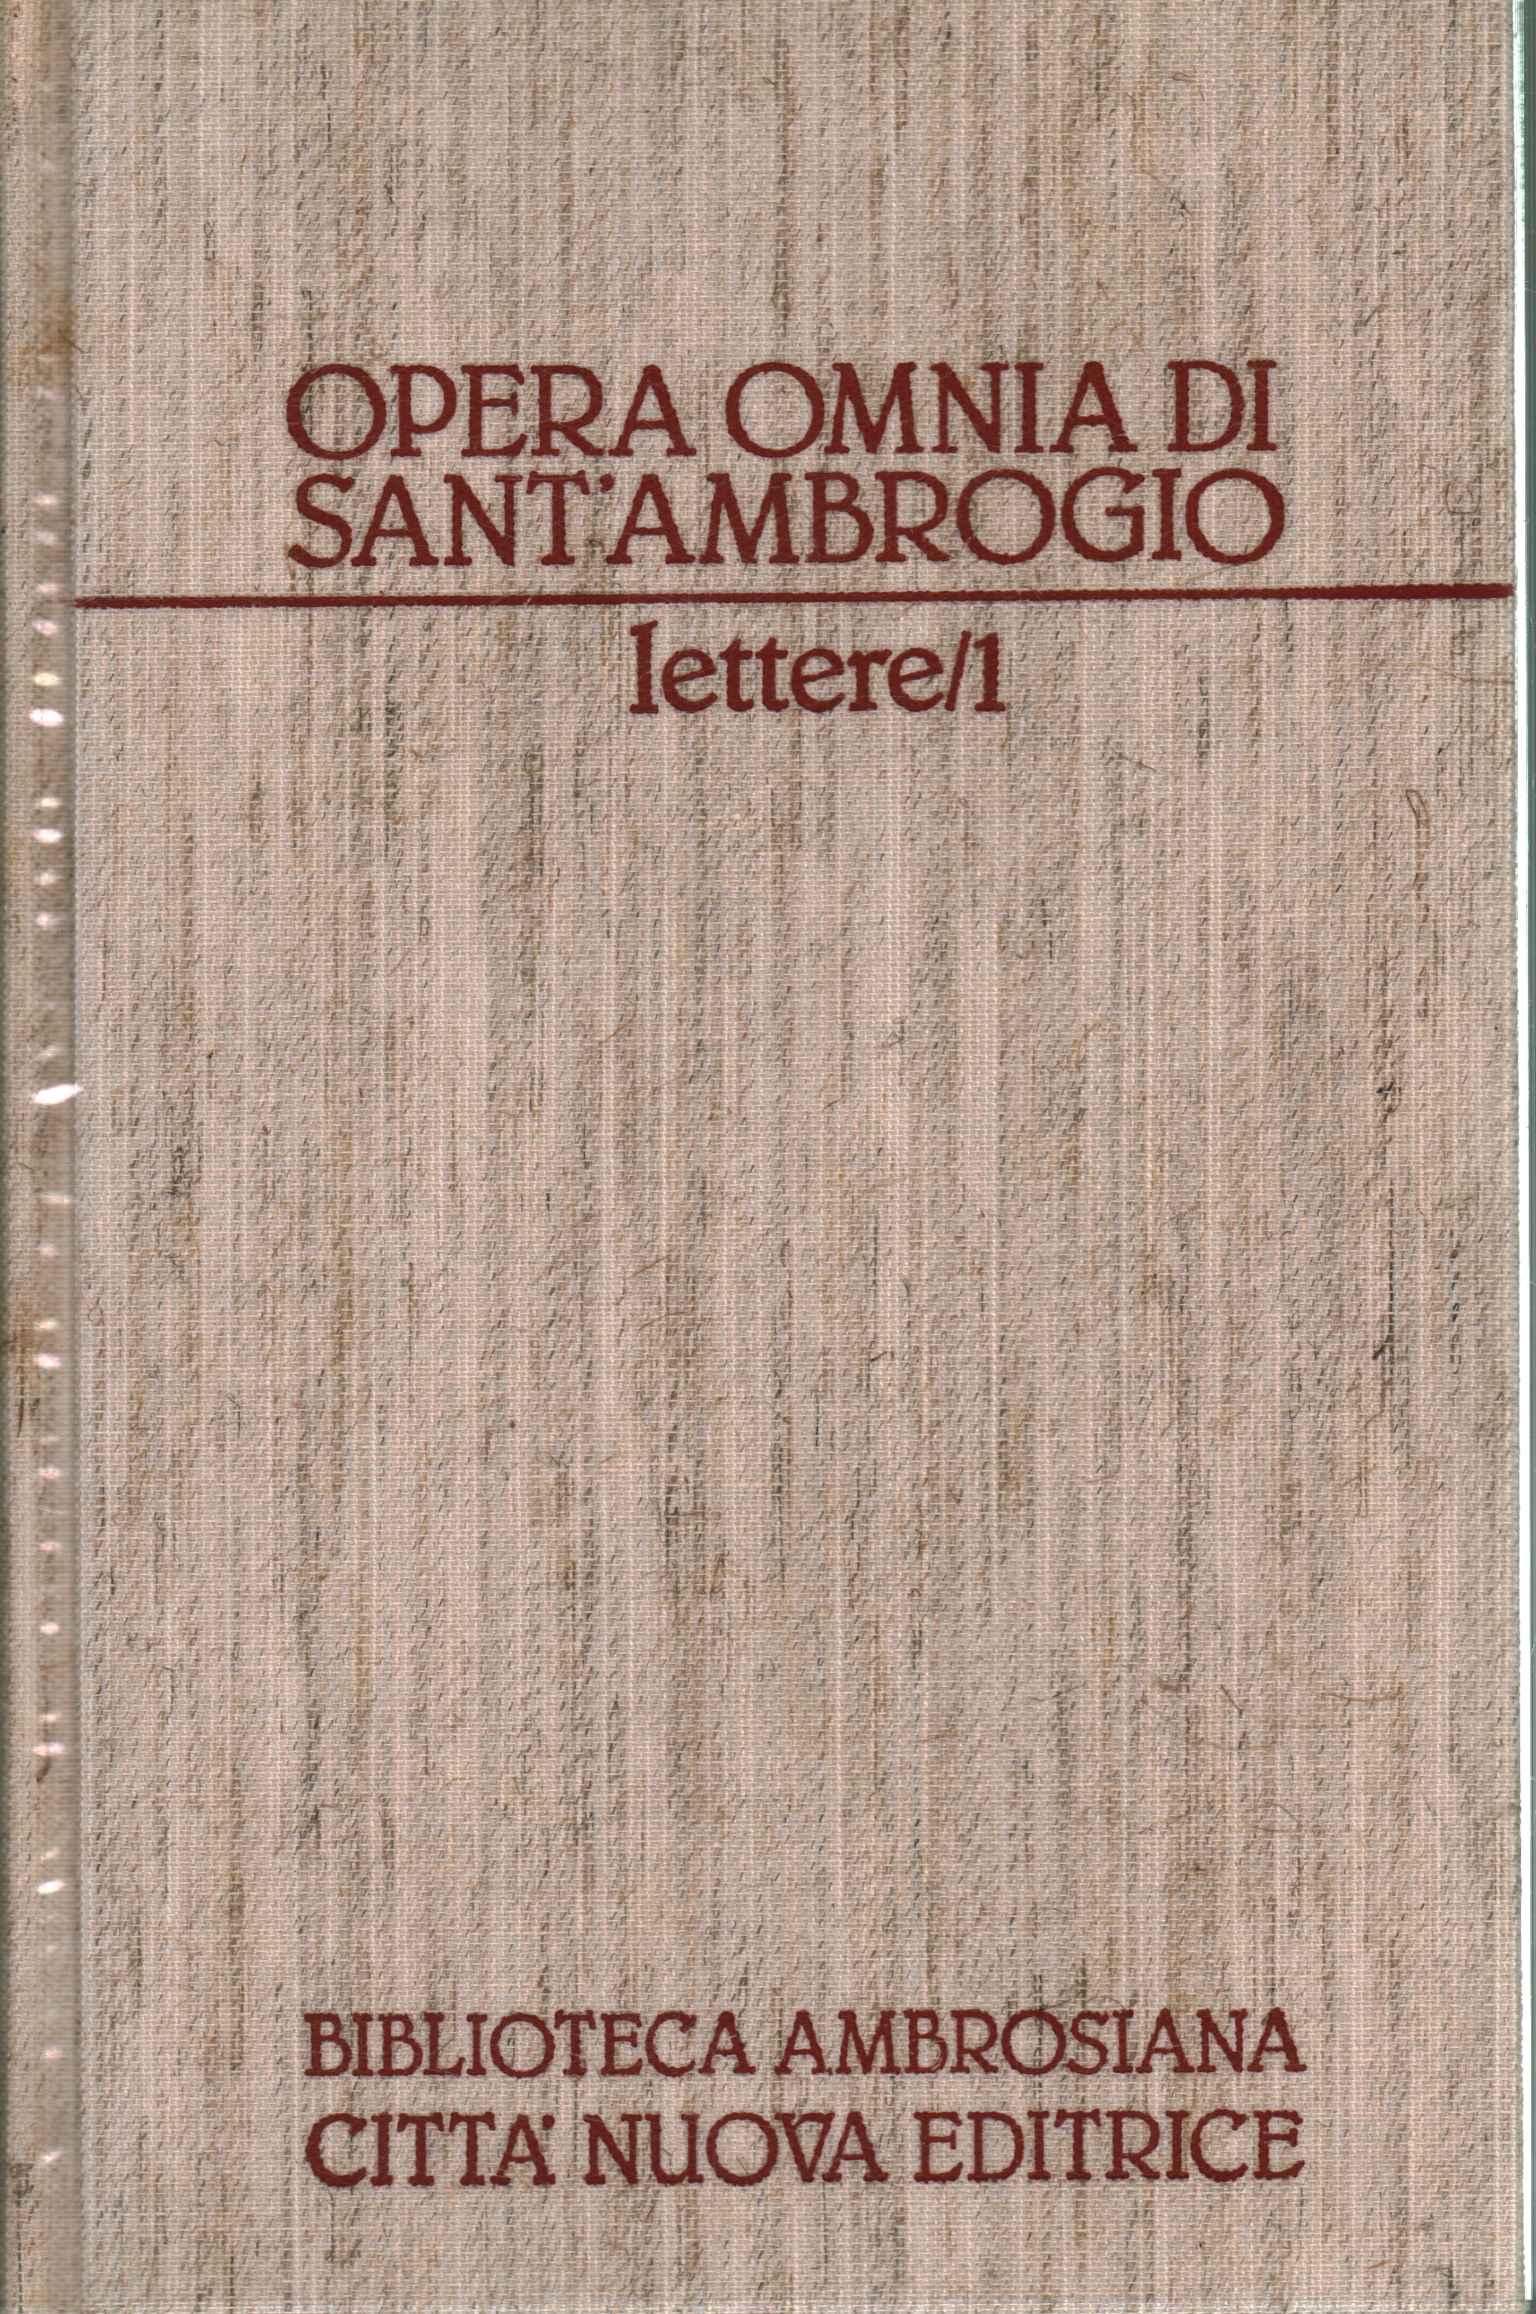 Opera Omnia von Sant'Ambrogio. D